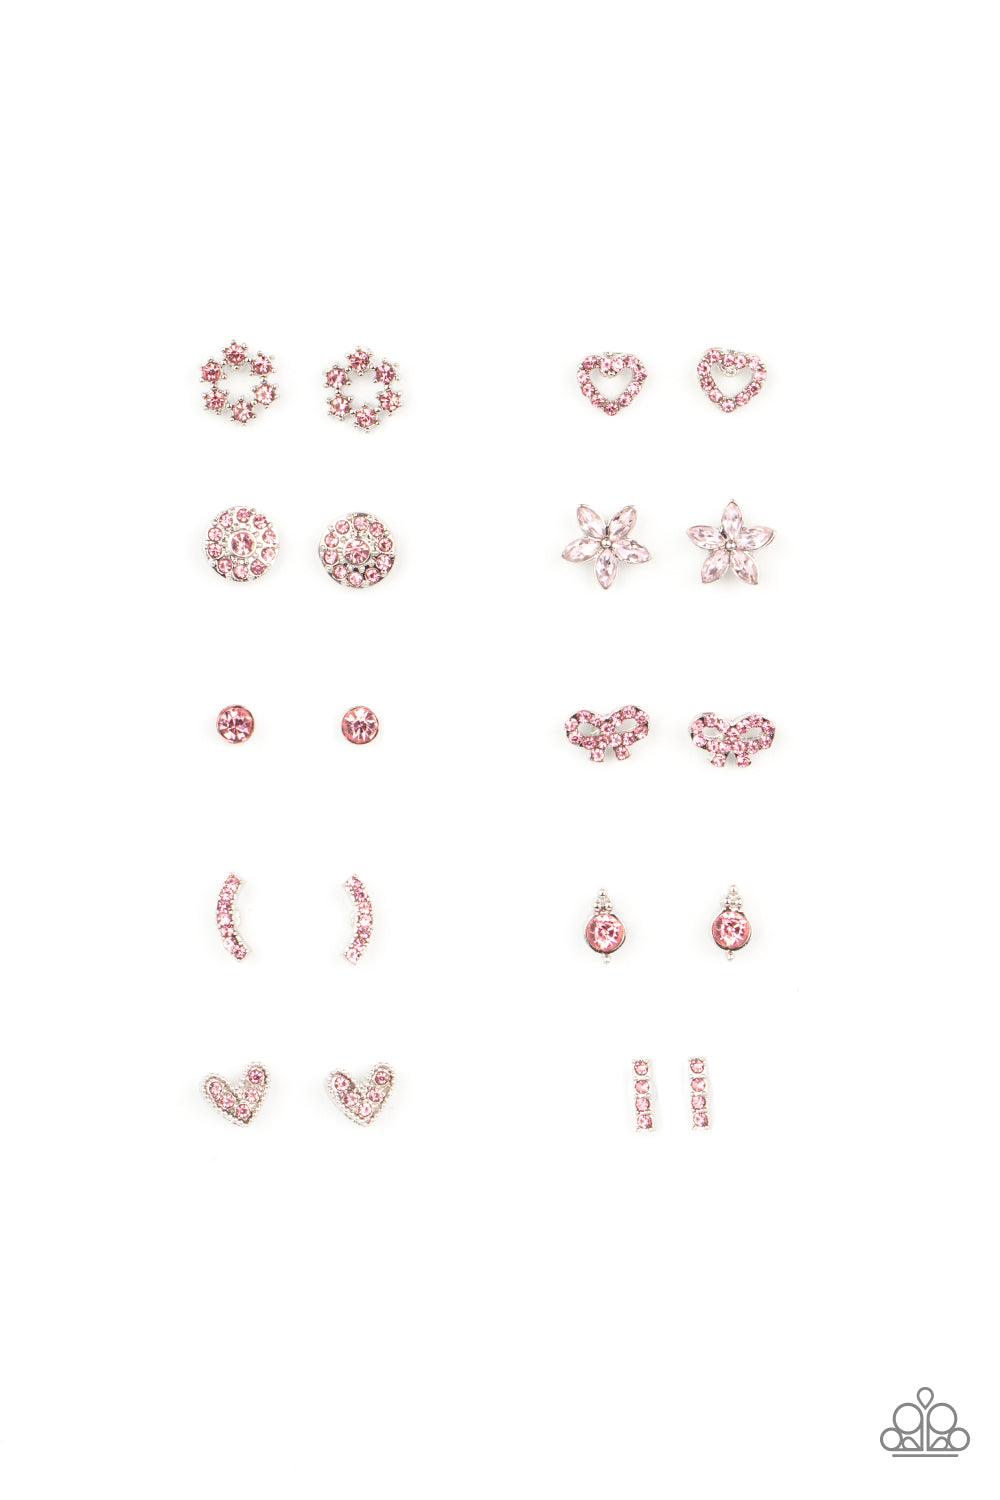 Starlet Shimmer Pink Rhinestone Earrings - Jewelry by Bretta